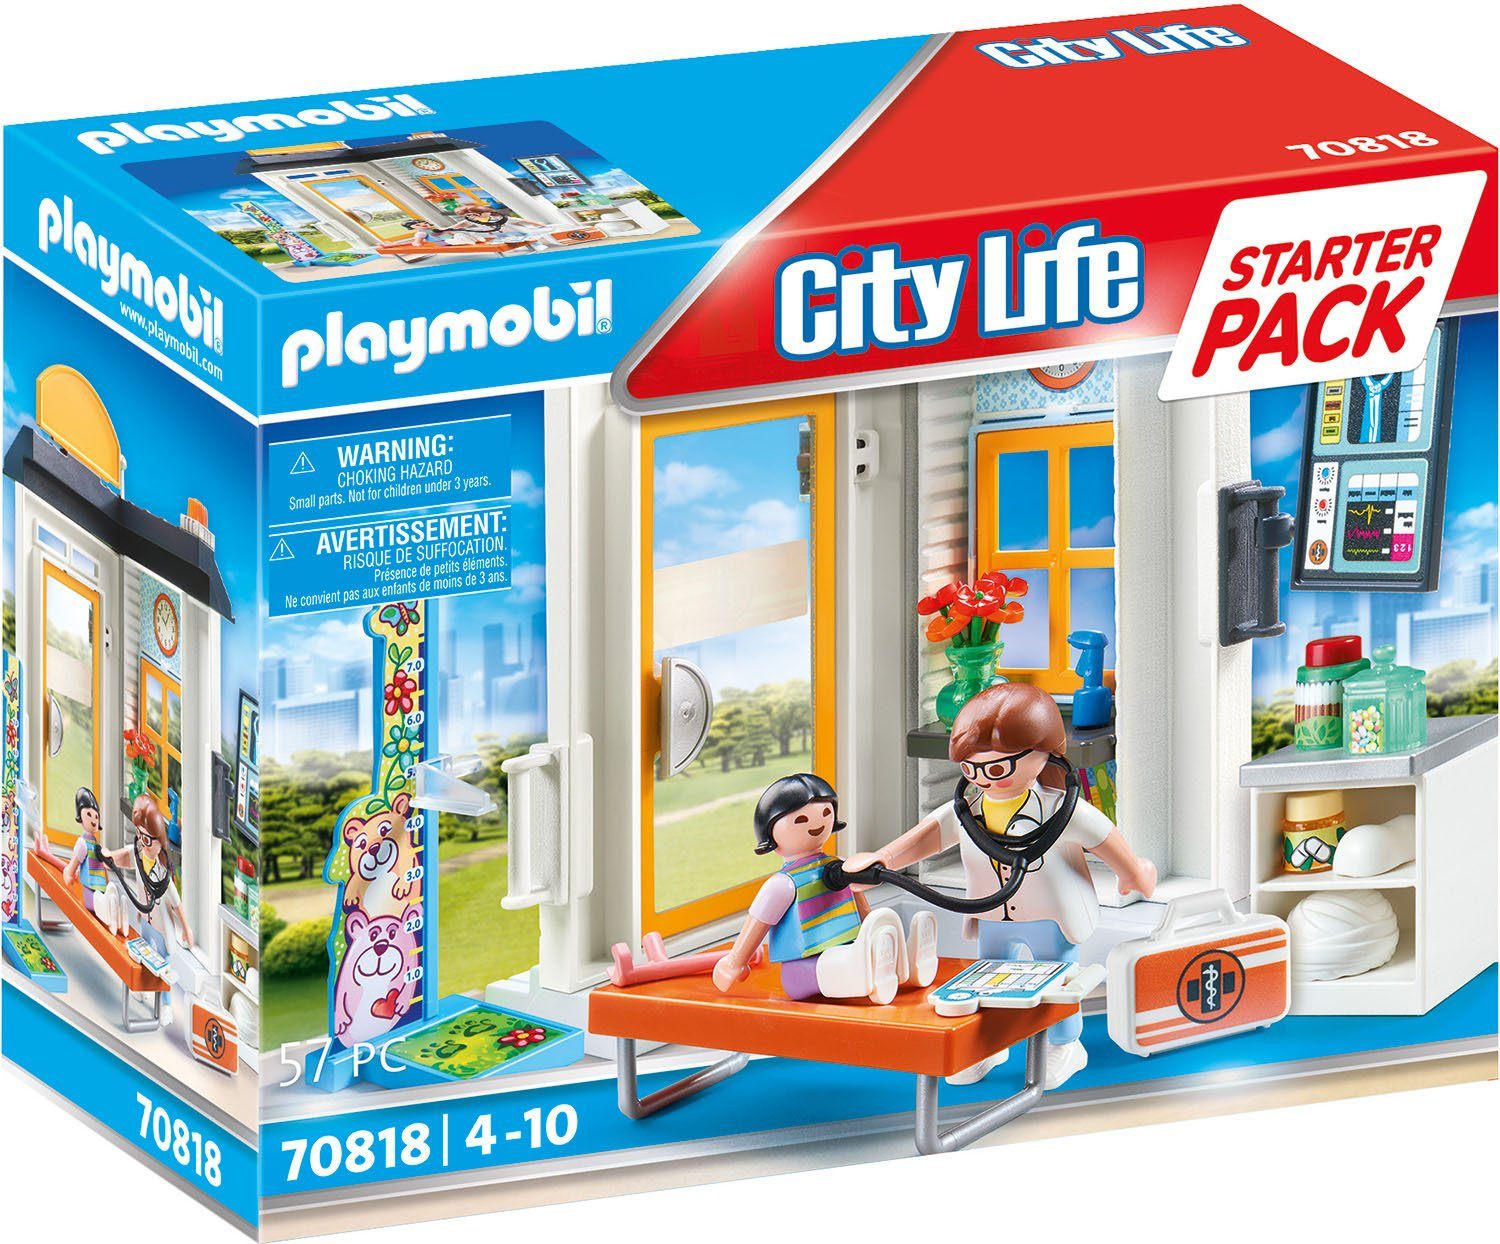 Playmobil® Konstruktions-Spielset Starter Pack Kinderärztin (70818), City  Life, (57 St), Made in Germany, Mit 2 Figuren, Arzthäuschen, Arztkoffer mit  4 tlg. Arztbesteck, u.v.m.